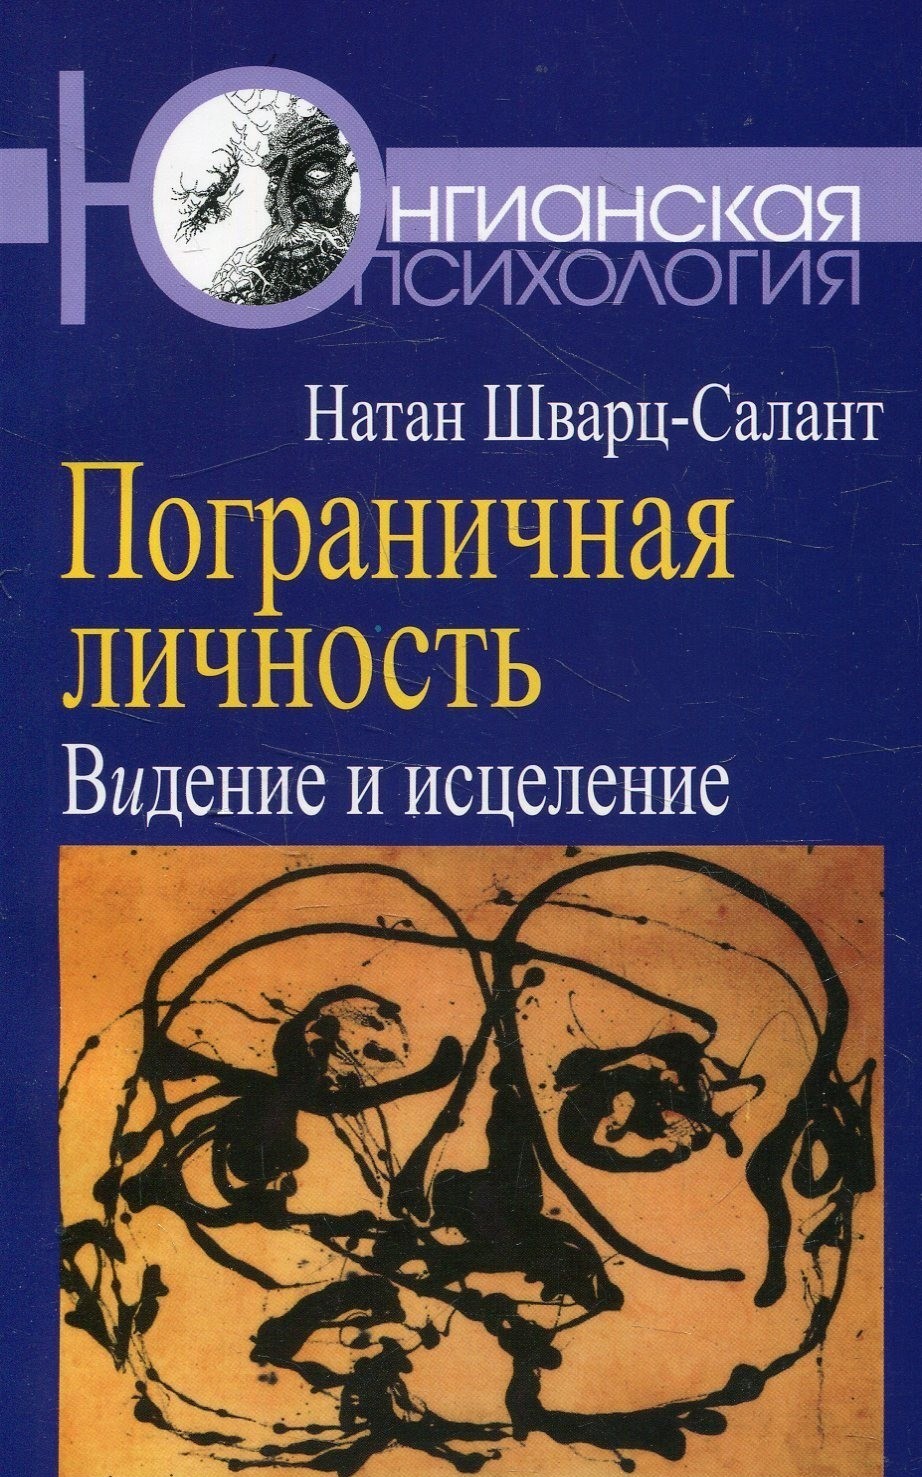 Обложка книги "Пограничная личность: Видение и исцеление"